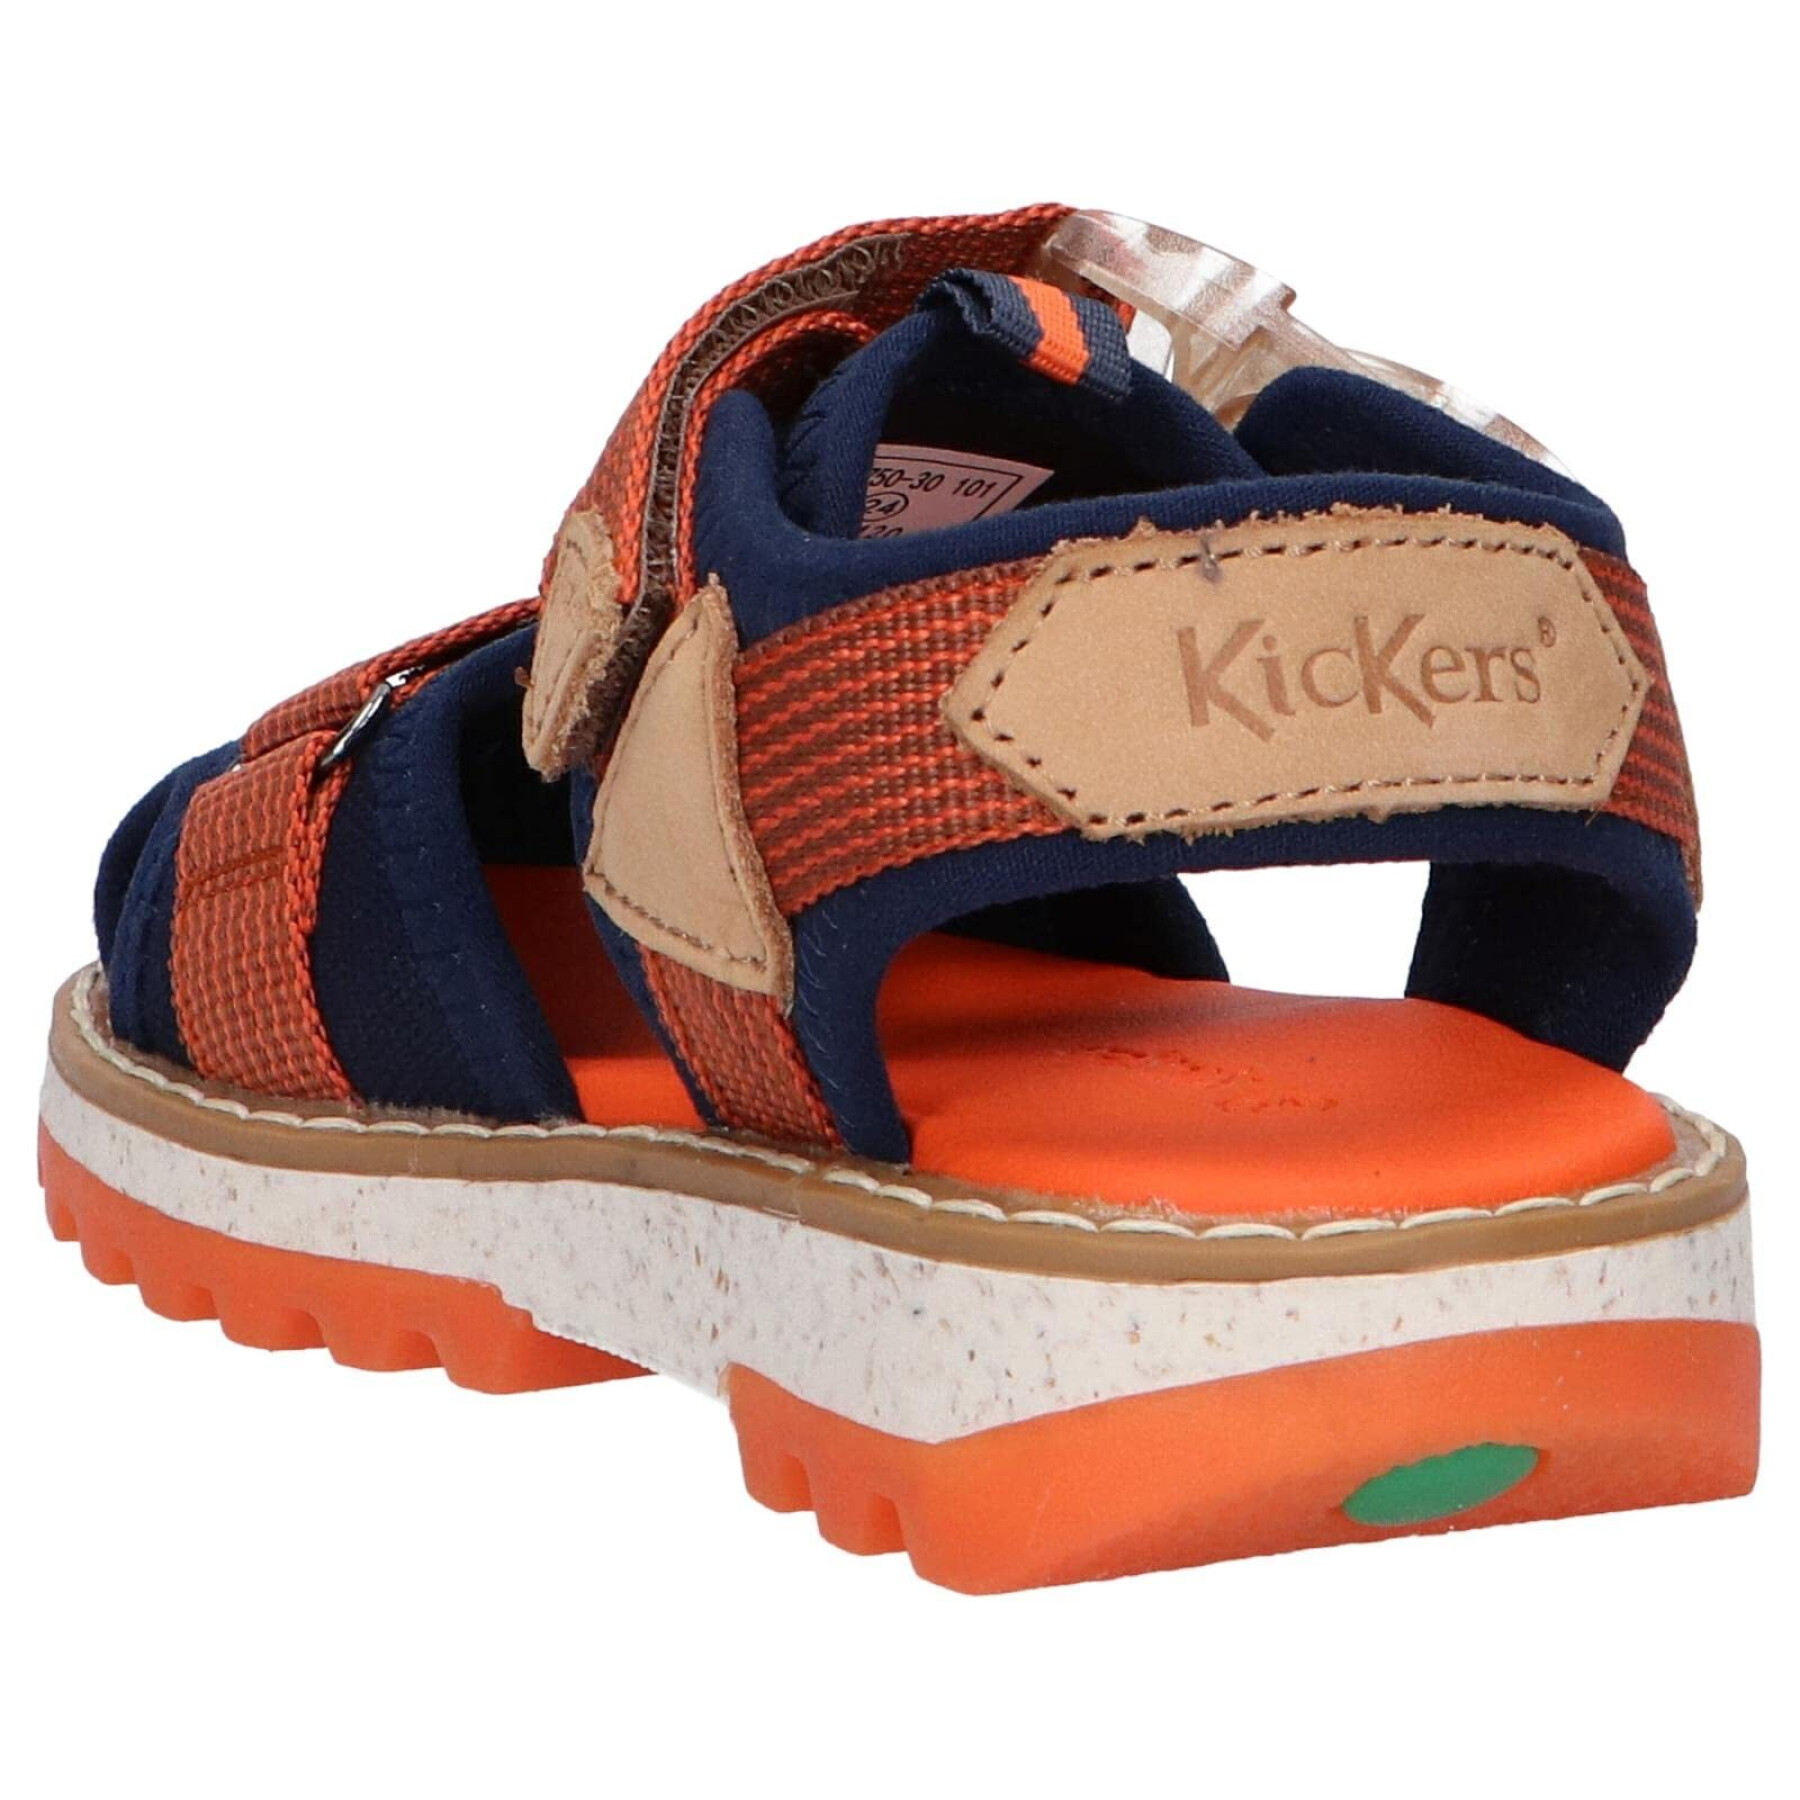 Boys' sandals Kickers Kickclic